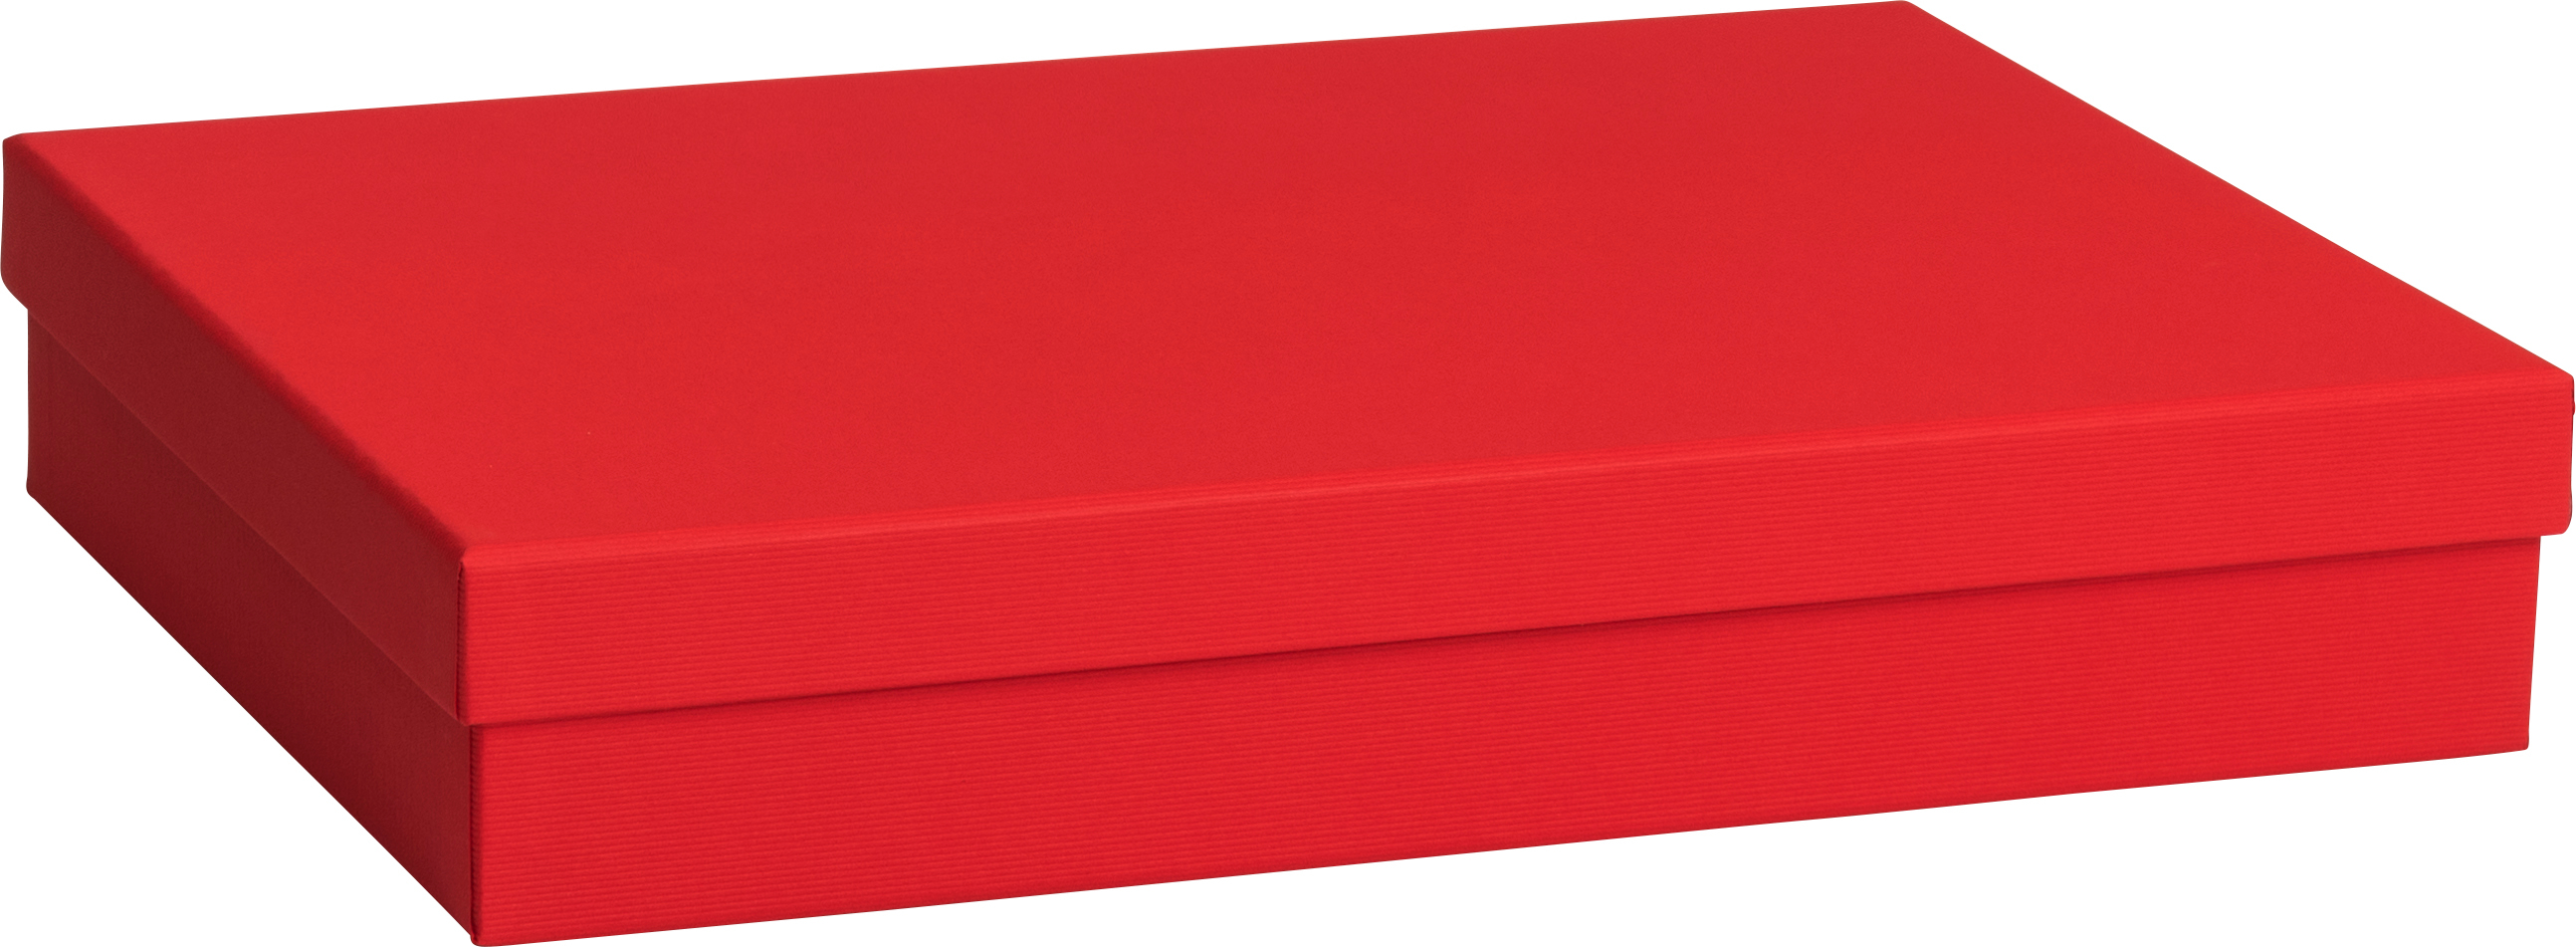 STEWO Boîte cadeau One Colour 2551784393 rouge 24x33x6cm